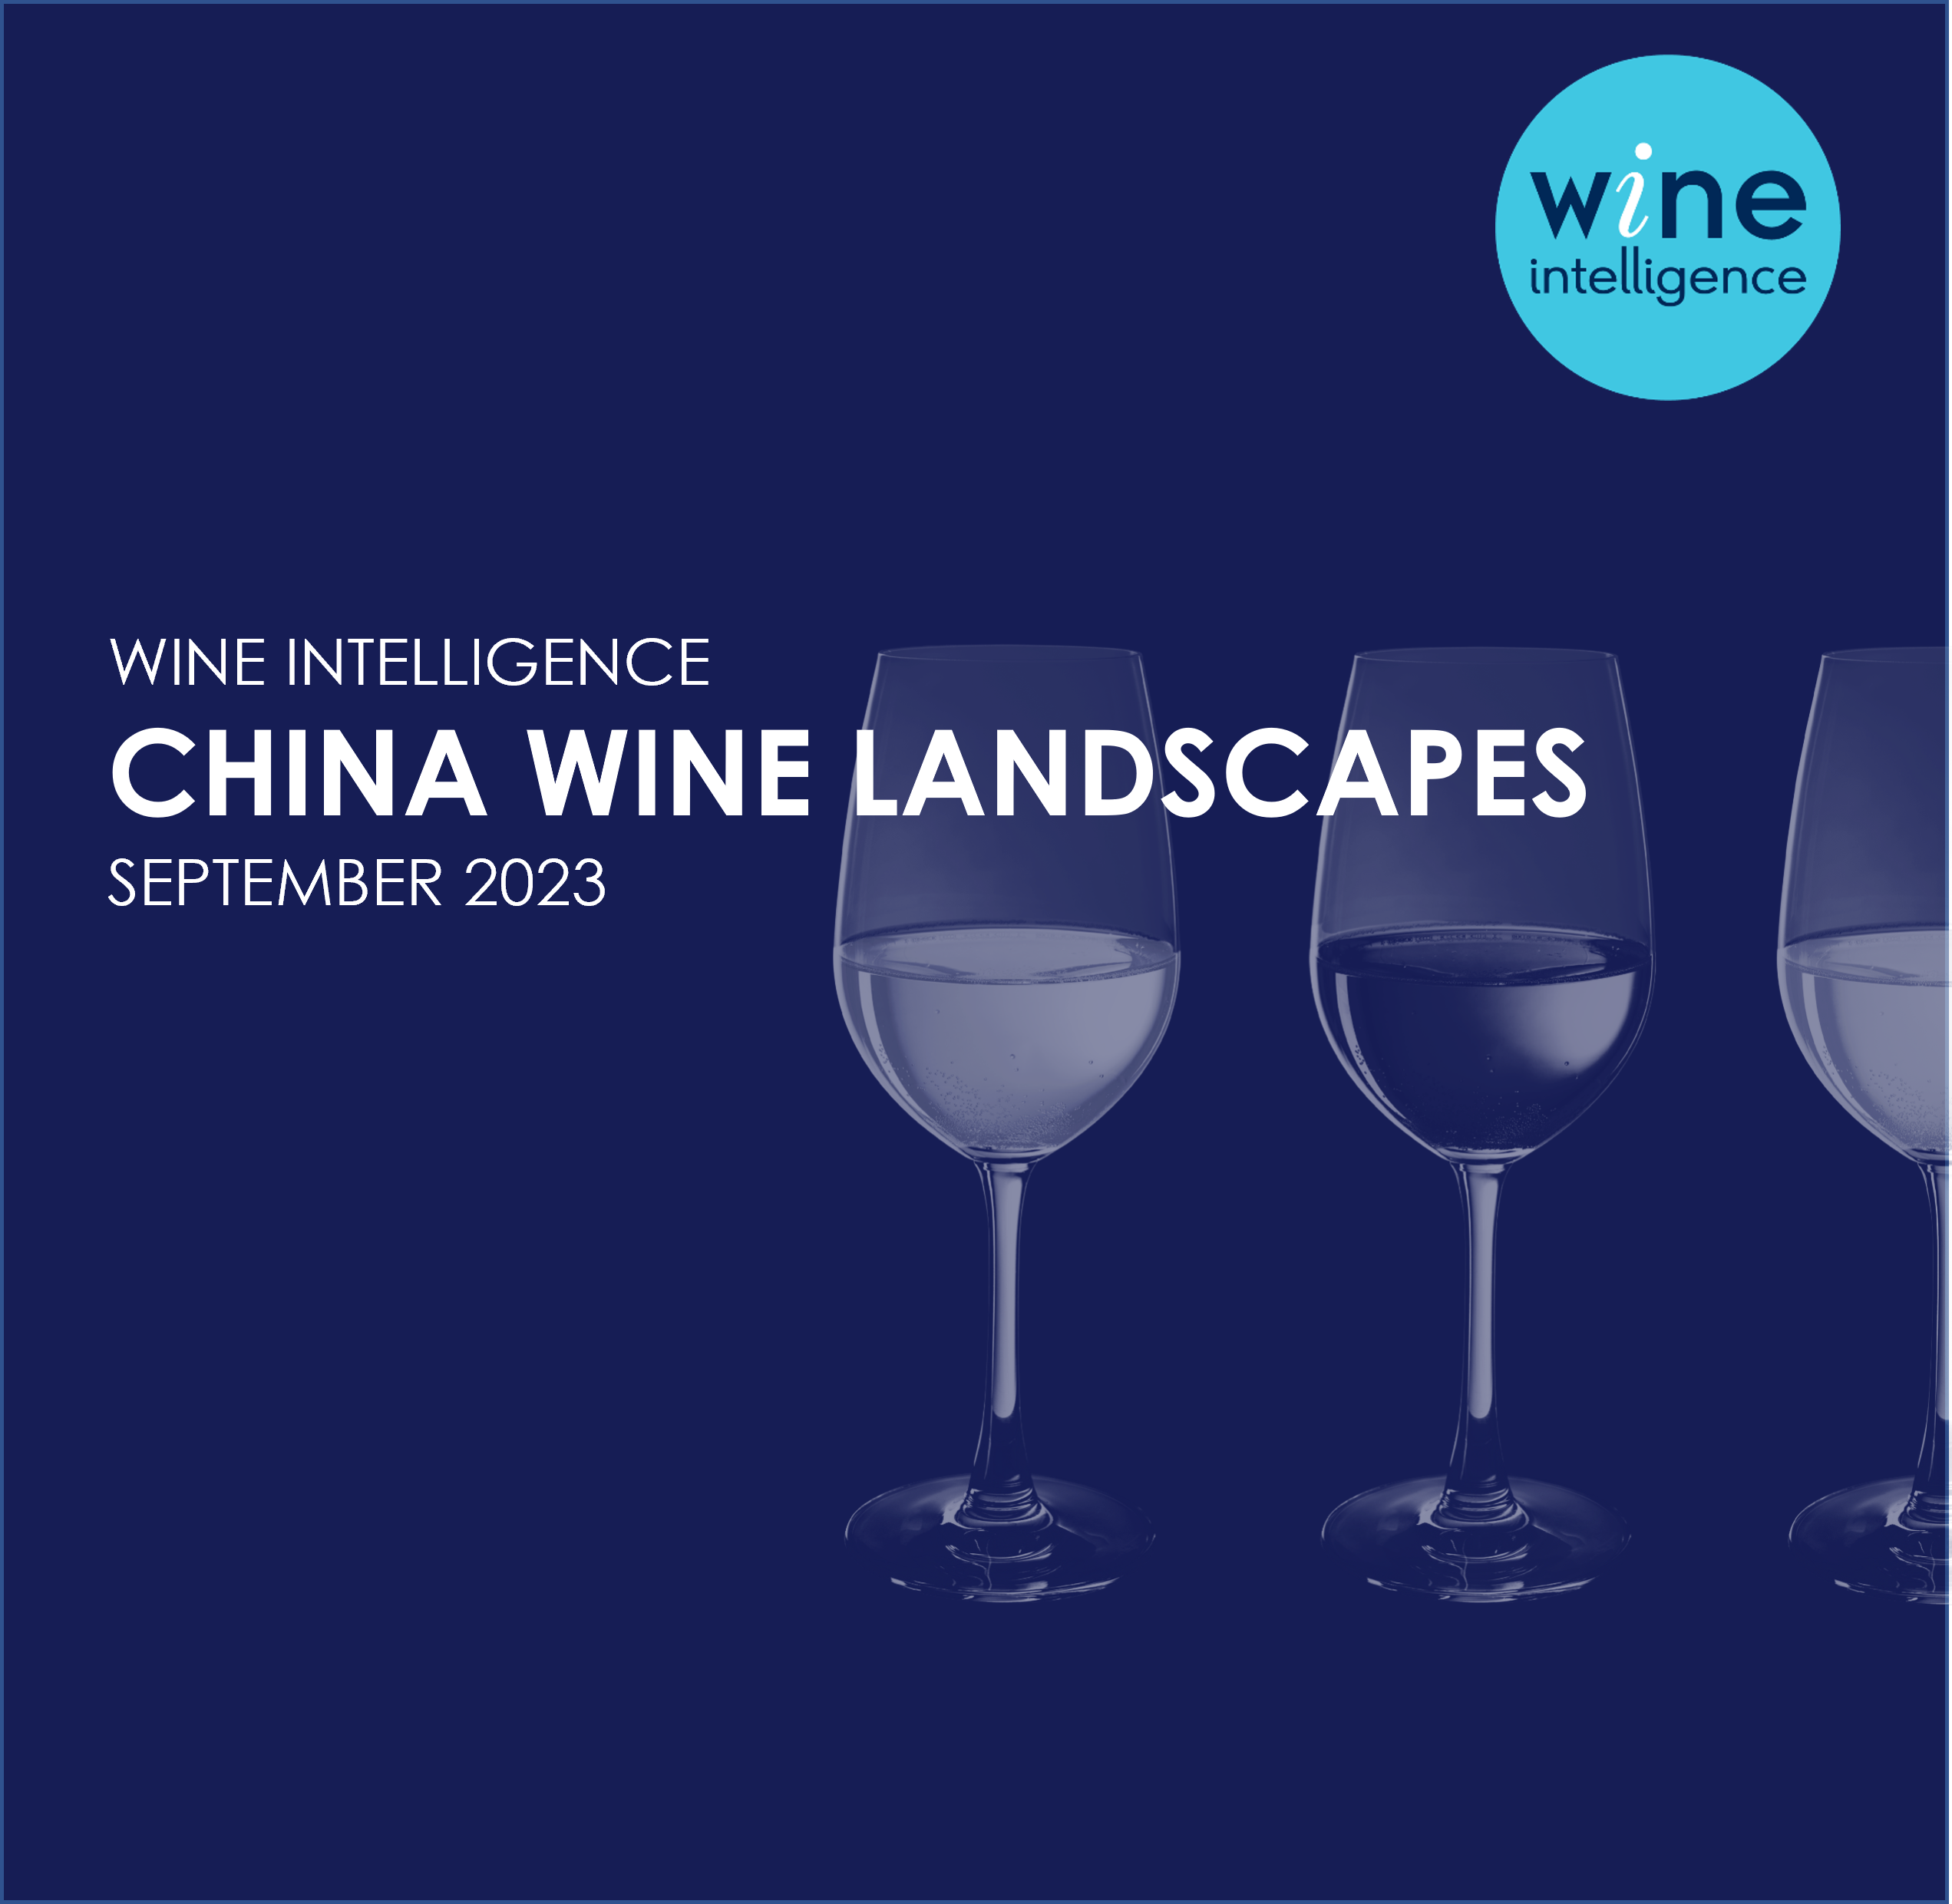 China Wine Landscapes 2023 - China Wine Landscapes Report 2023